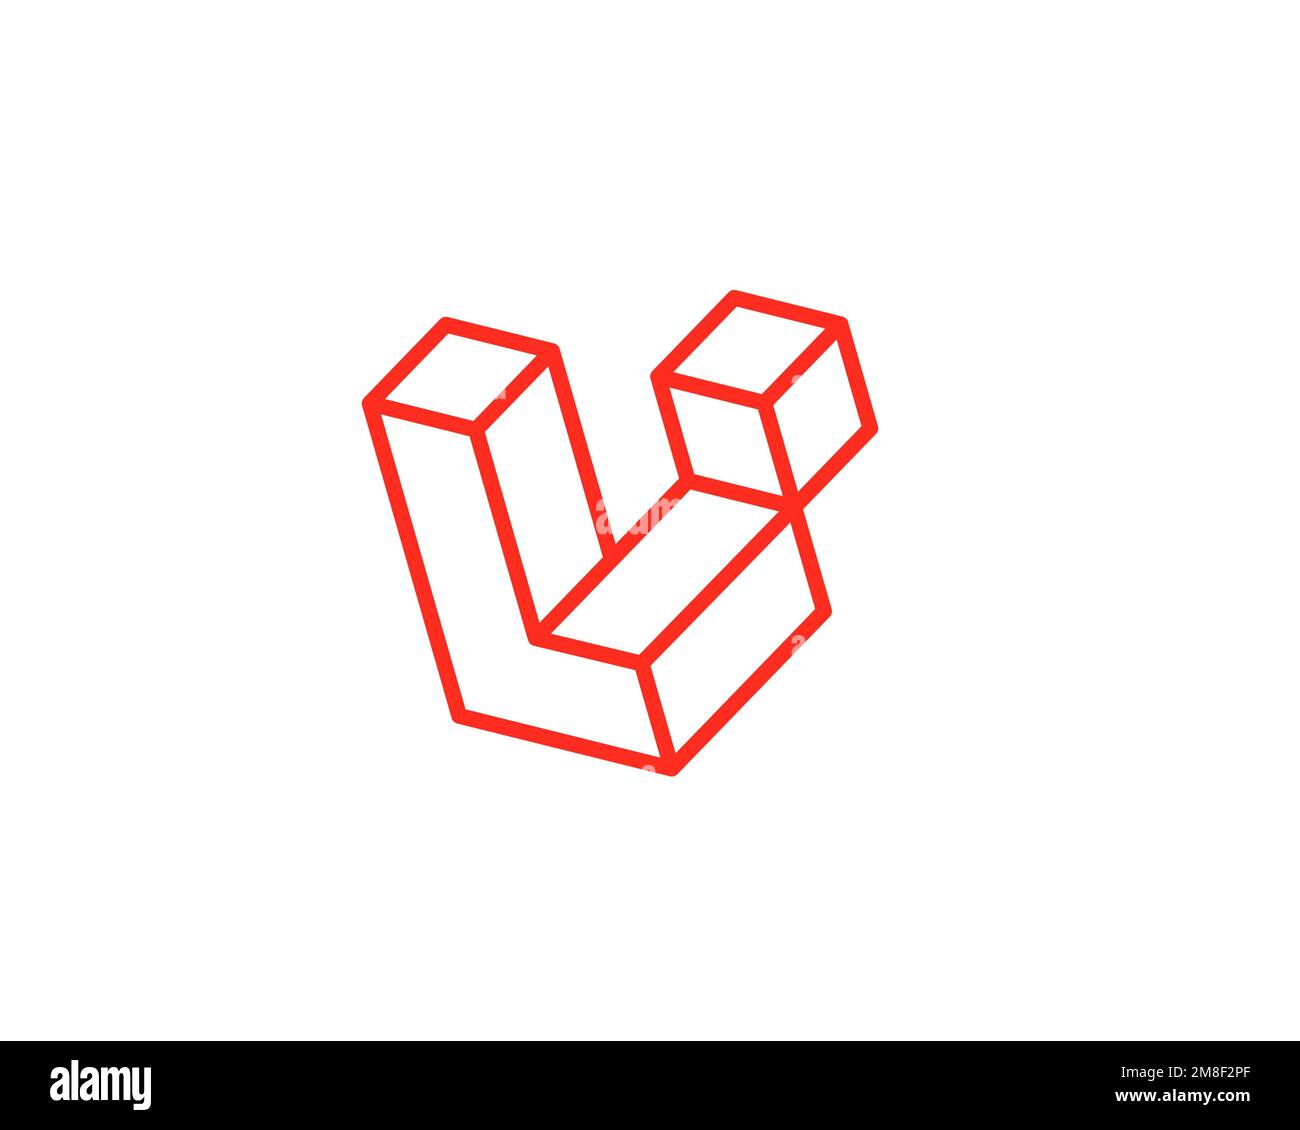 Logo Laravel trên nền trắng đơn giản nhưng vô cùng ấn tượng, sẽ khiến cho bất kỳ ai cũng phải trầm trồ khen ngợi. Nếu bạn là một fan của Laravel và muốn tìm kiếm logo đầy thu hút, thì đừng bỏ qua hình ảnh này nhé!